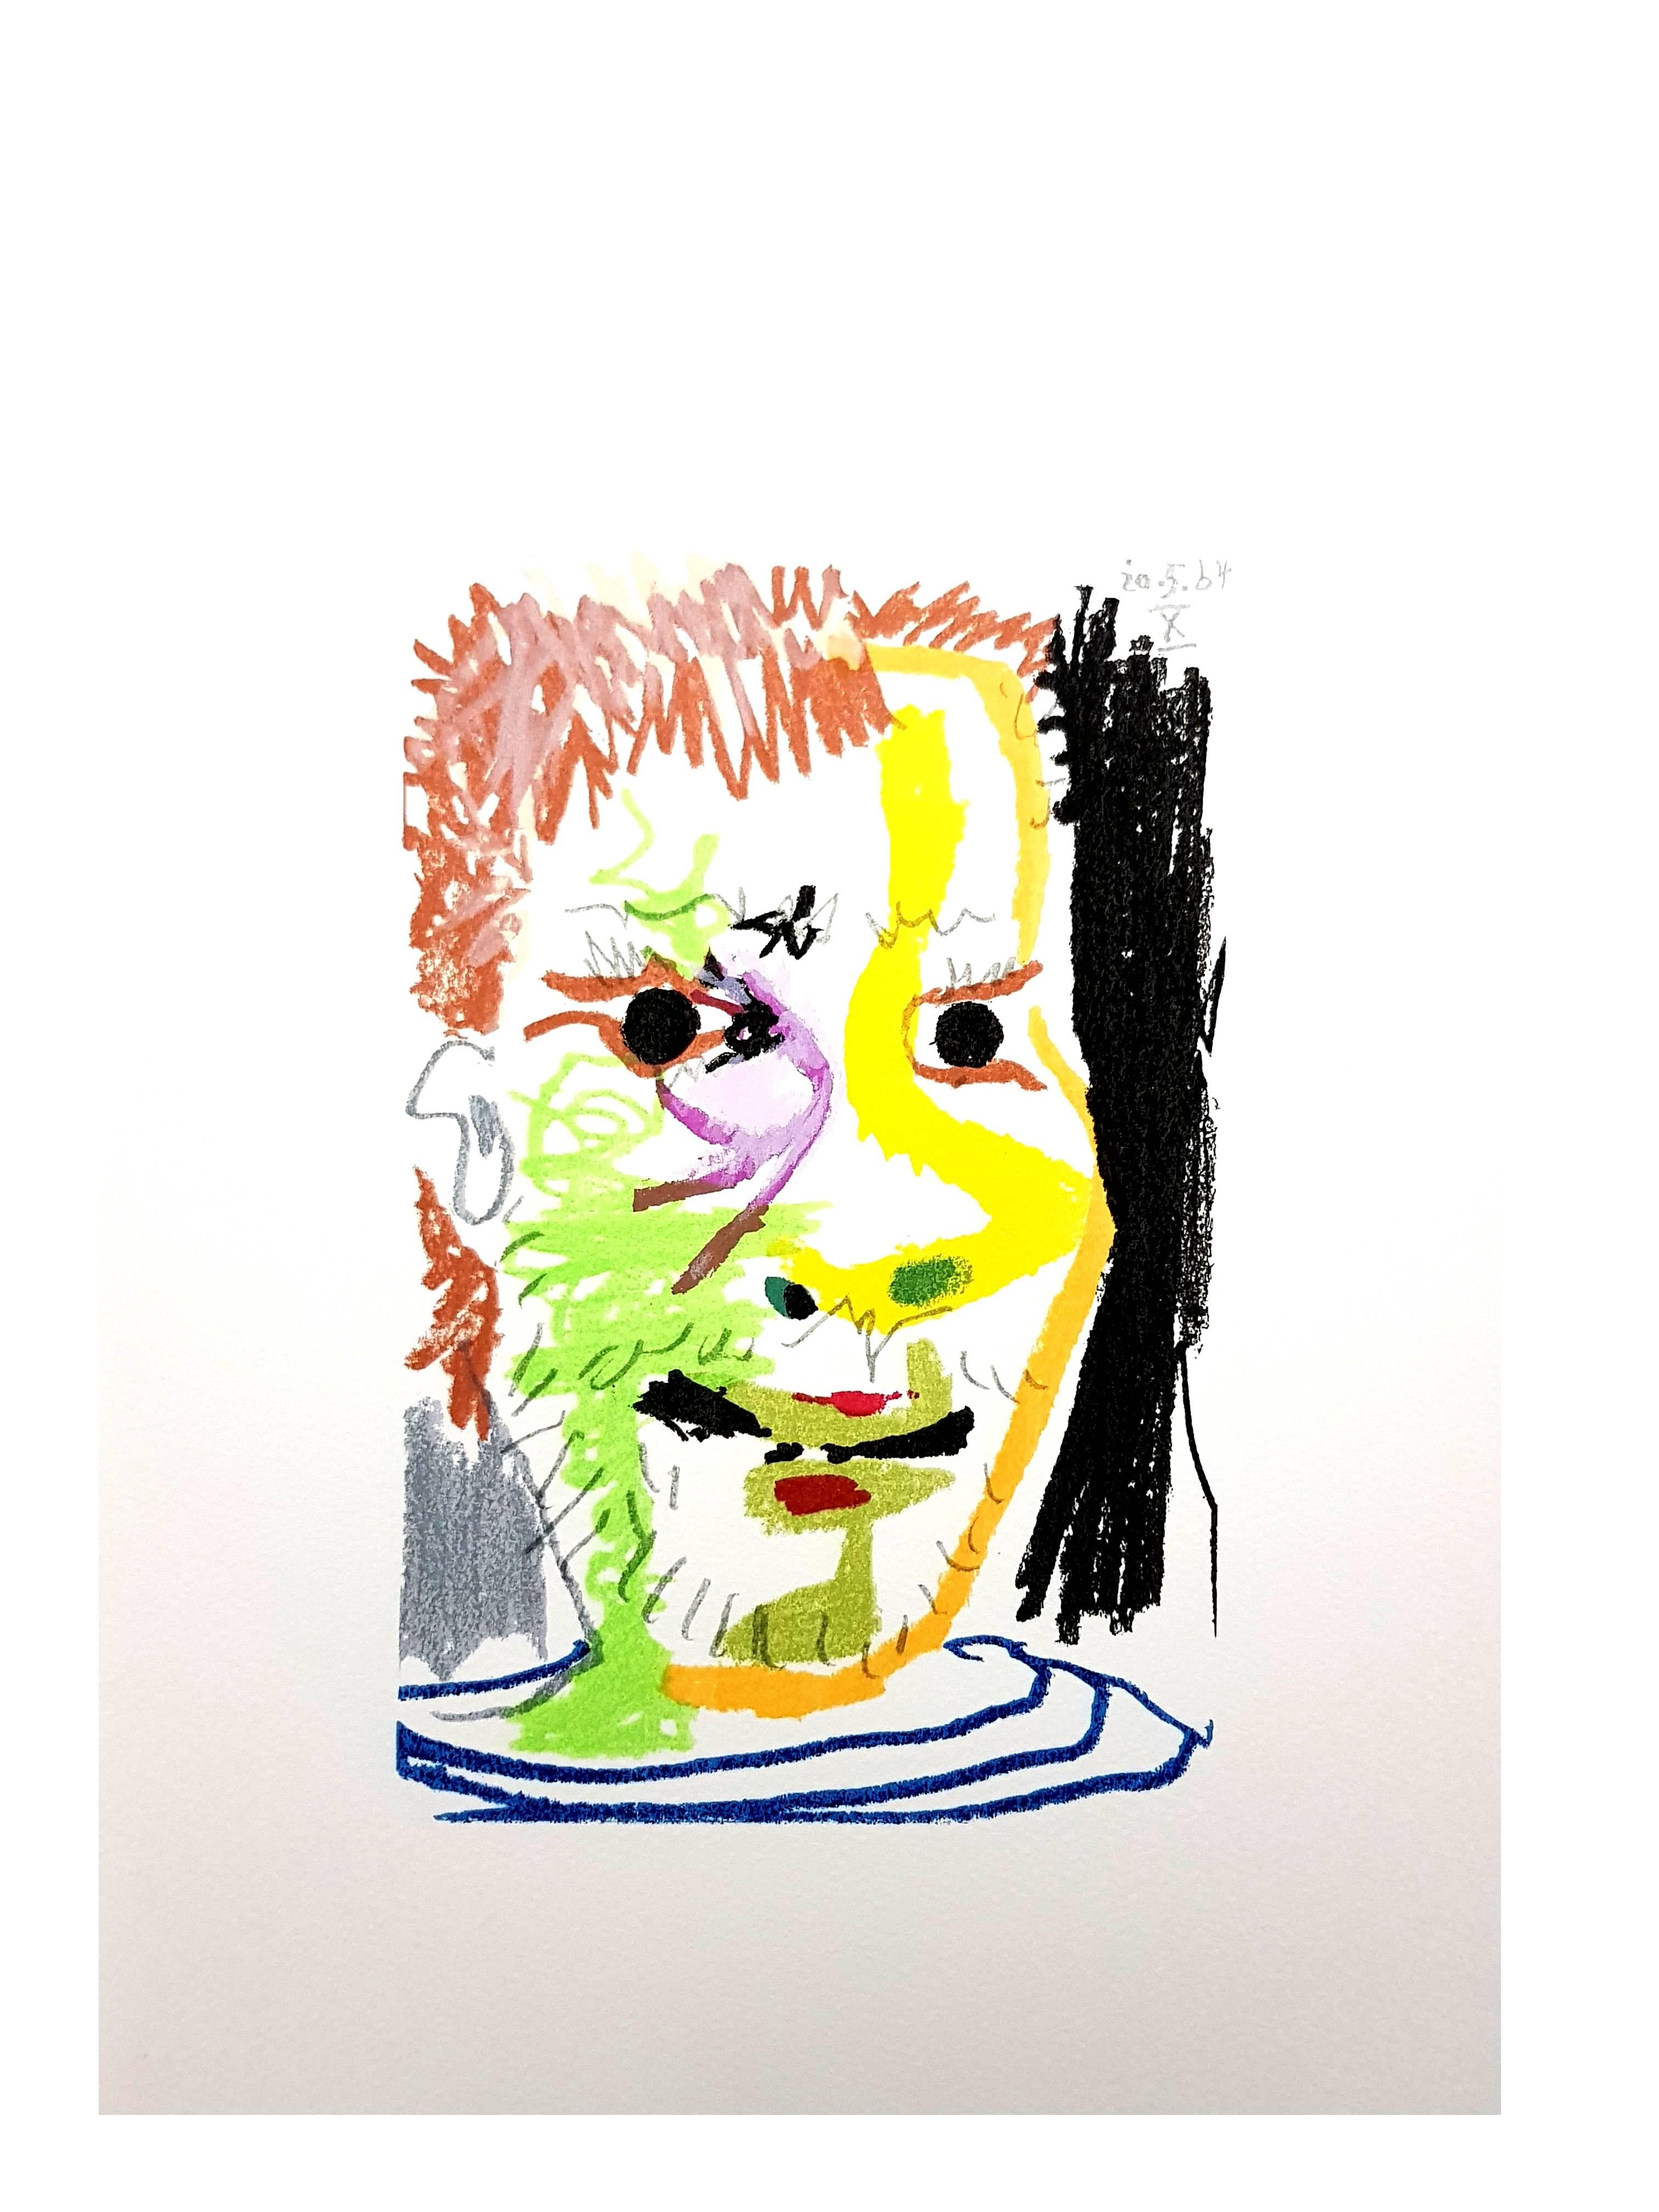  Le Goût de Bonheur: one plate - Colorful Portrait  - Modern Print by (after) Pablo Picasso